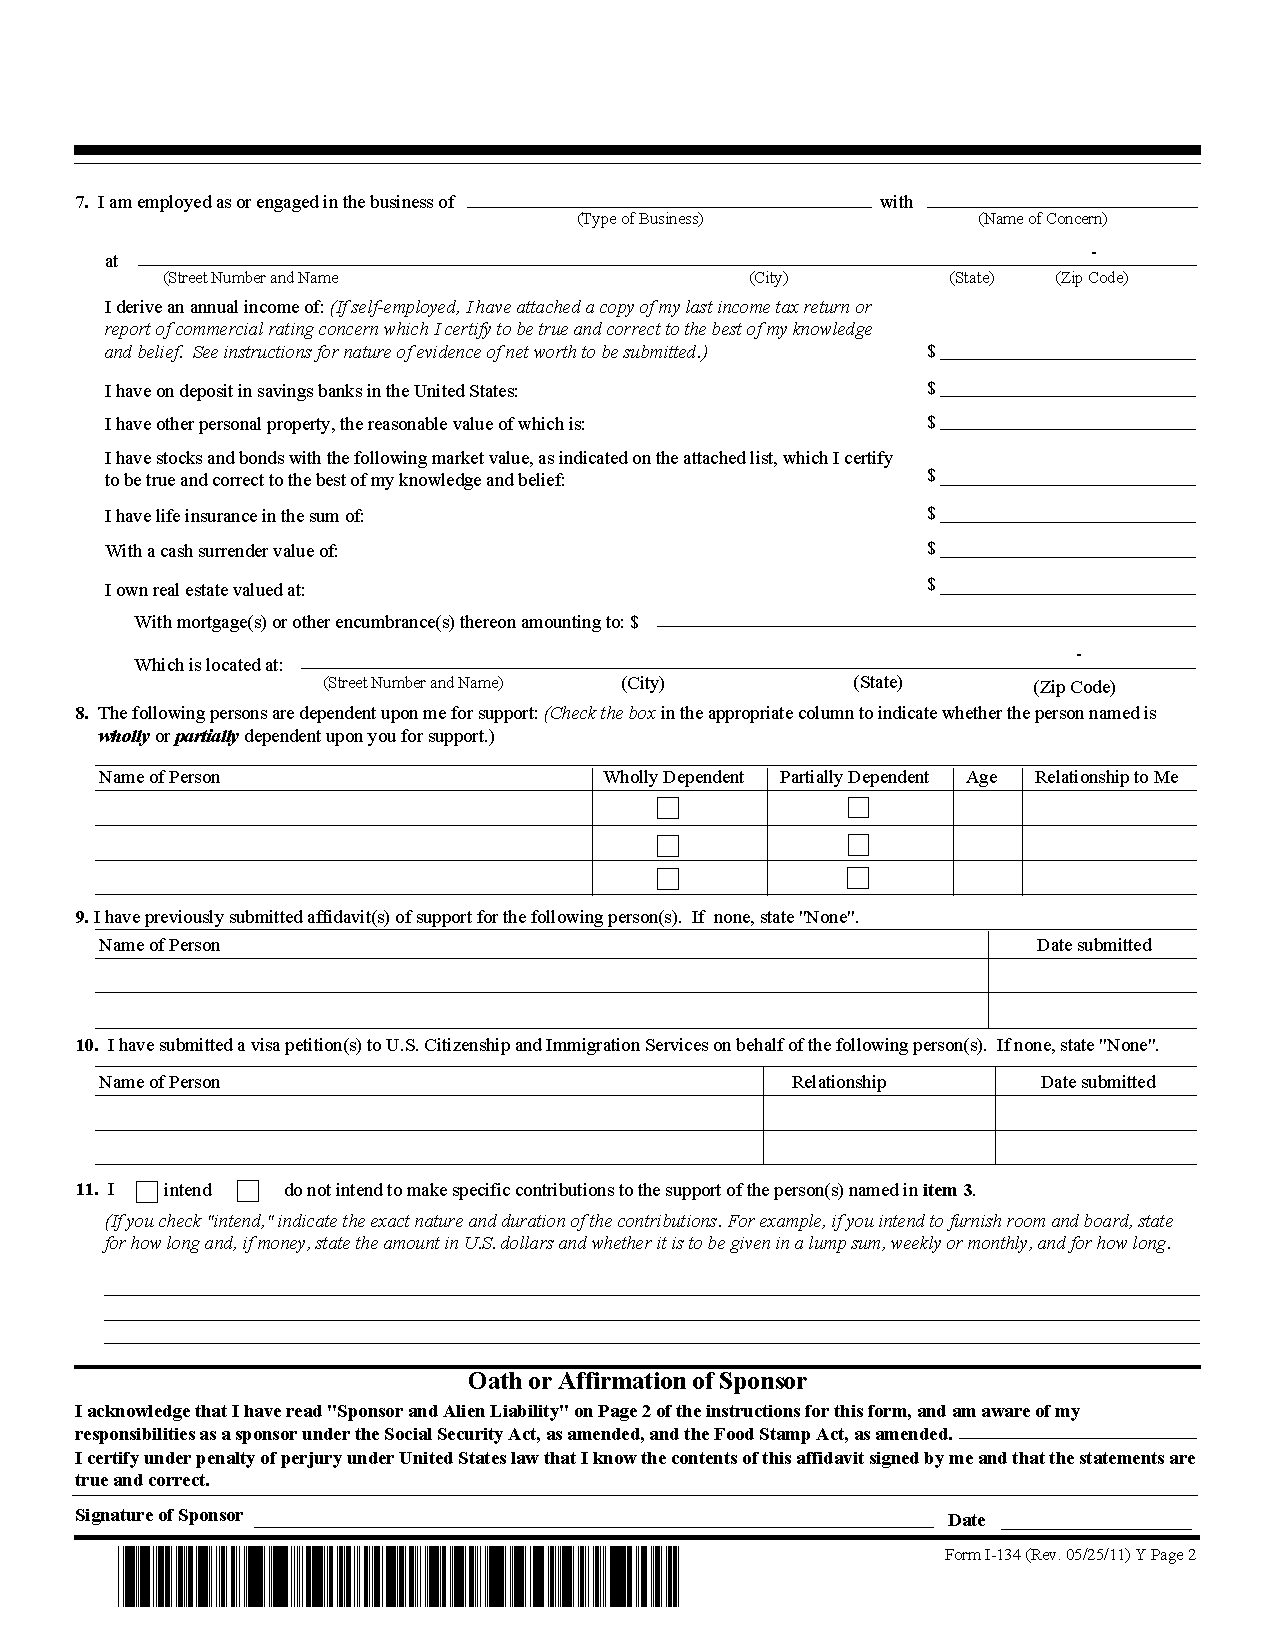 Affidavit Of Support Uscis Form I 134 2023 9674